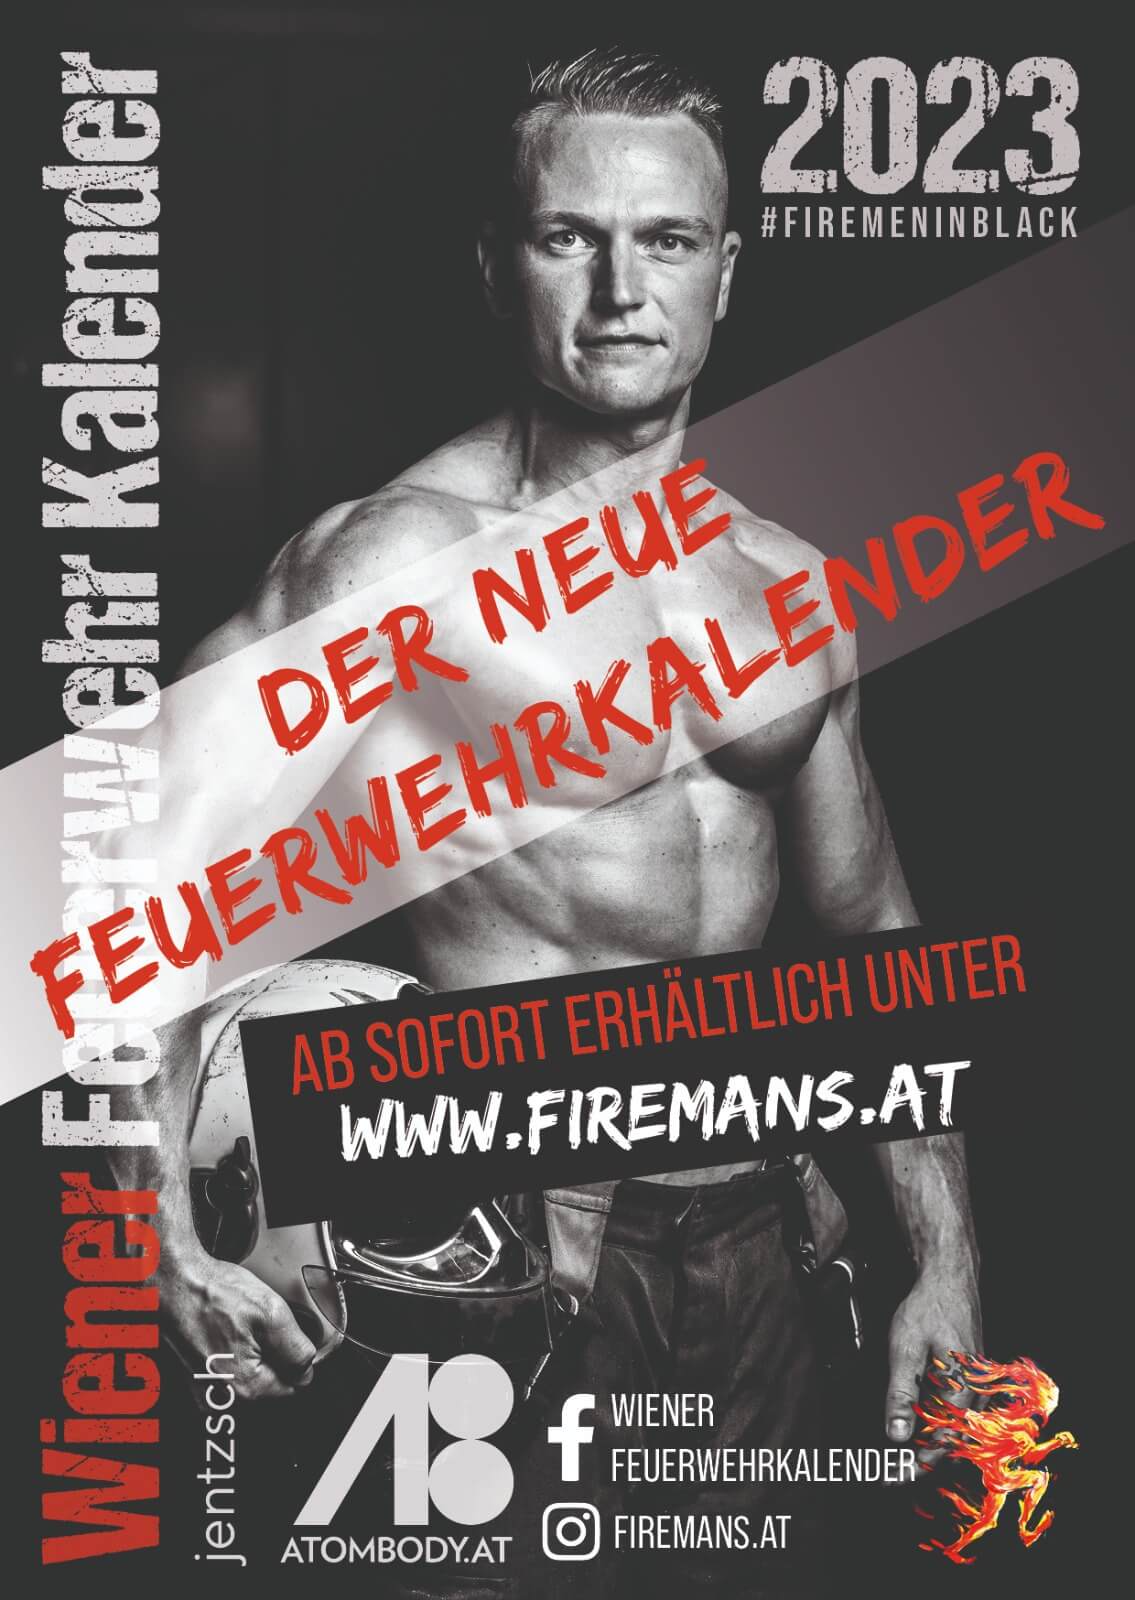 Der neue Wiener Feuerwehr-Kalender 2023 der Berufsfeuerwehr Wien